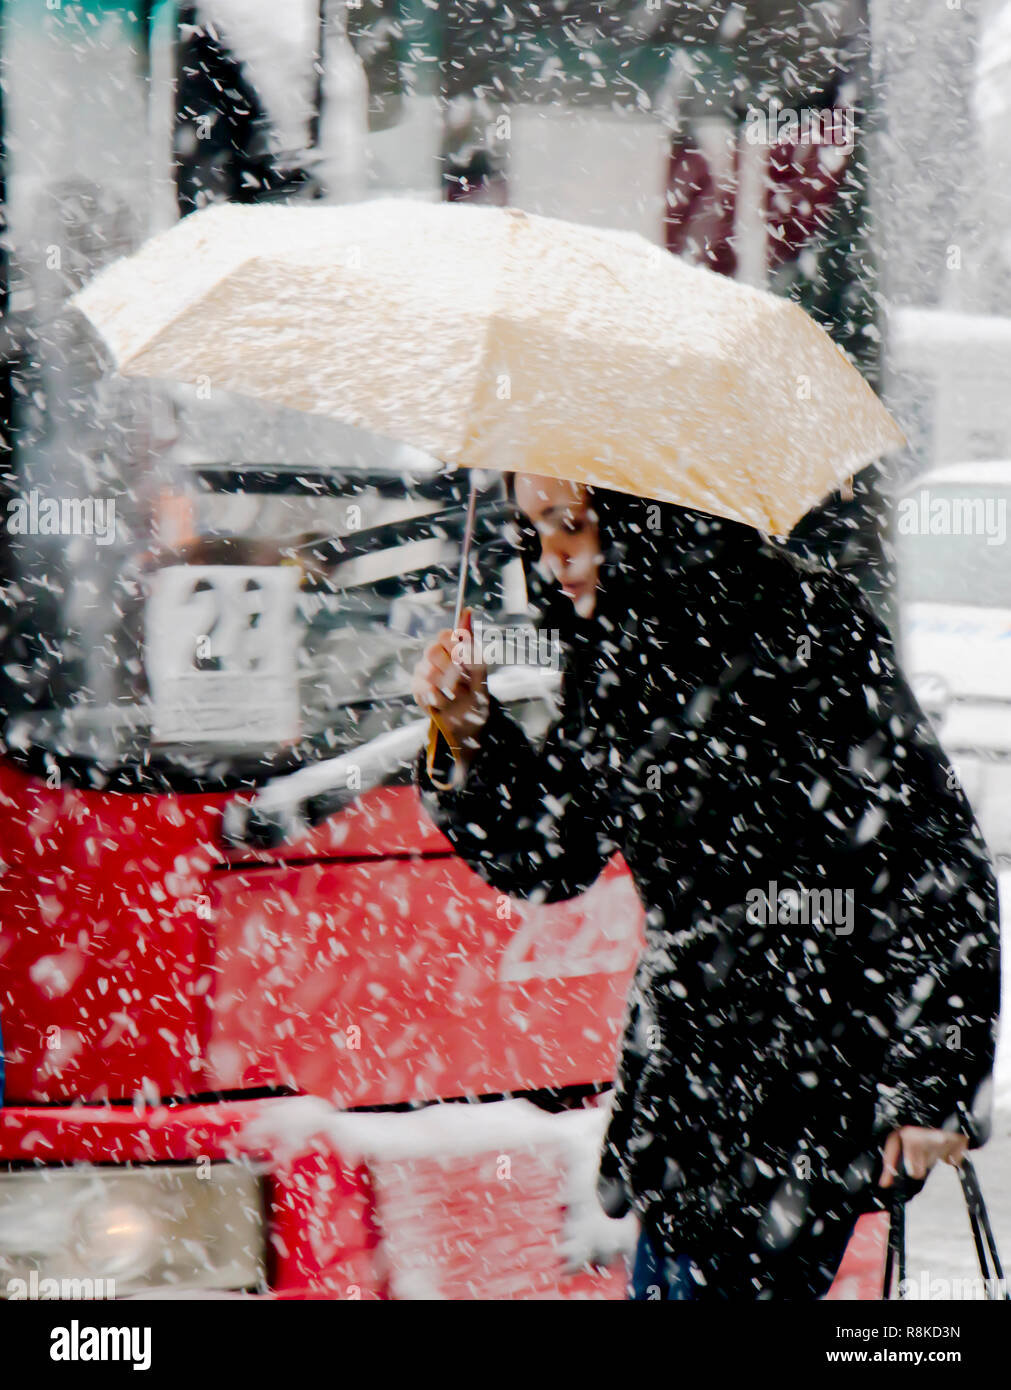 Belgrad, Serbien - Dezember 15, 2018: Eine junge Frau zu Fuß unter dem Dach in starker Schneefall in Stadt Straße vor den Bus Nummer 28. Stockfoto